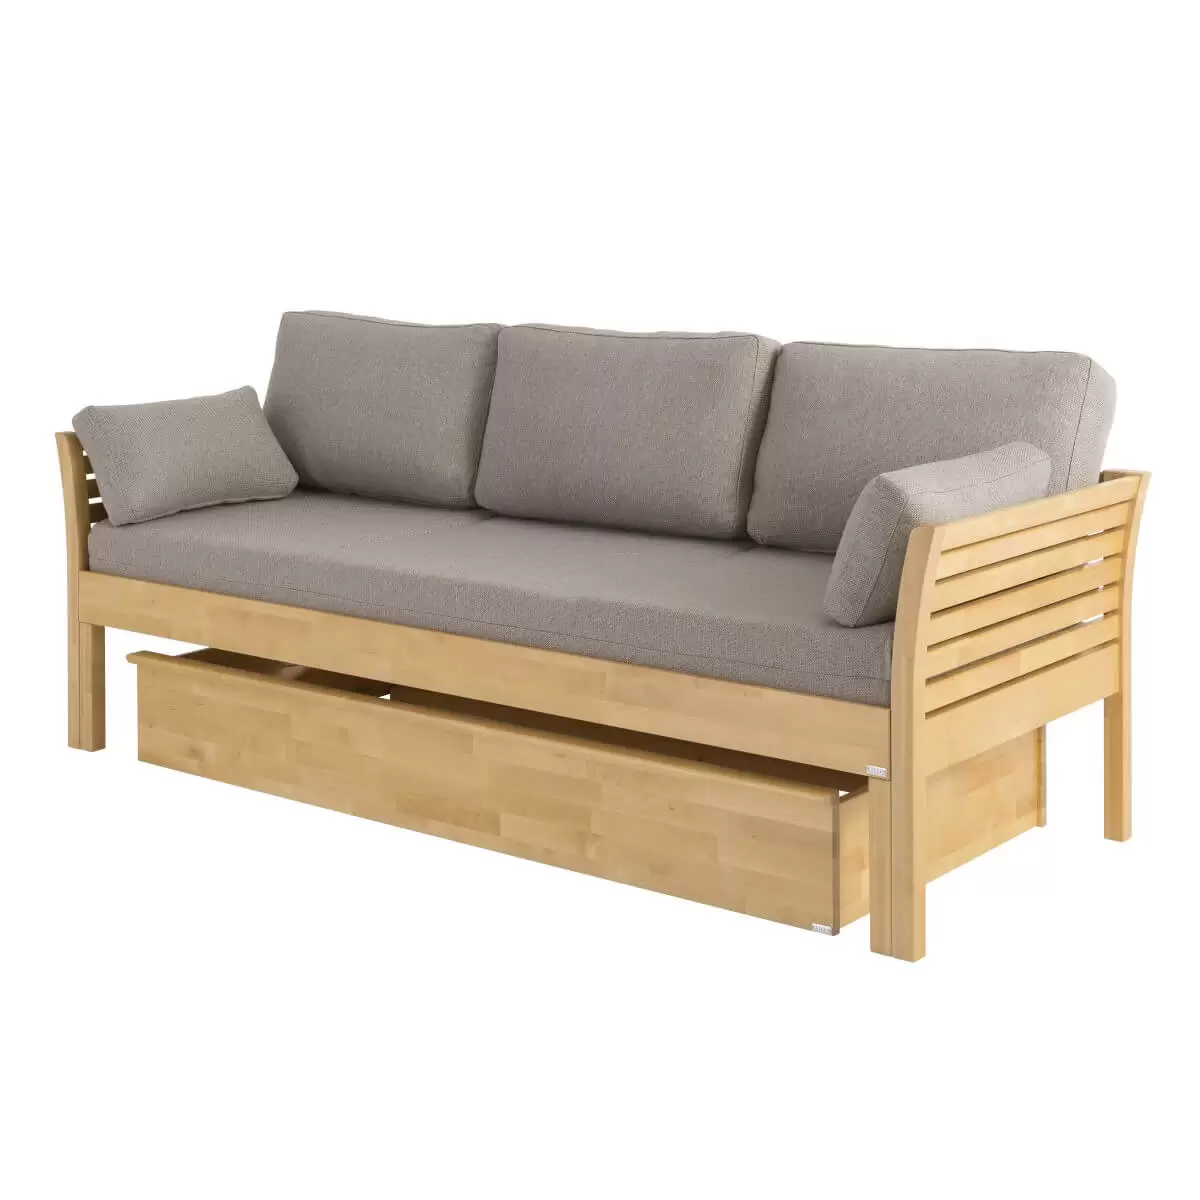 Sofa skandynawska z funkcją spania KANERVA kolor buk, z beżowym materacem i pięcioma poduszkami z wsuniętym pod sofę drewnianym pojemnikiem na przechowywanie w kolorze buku.